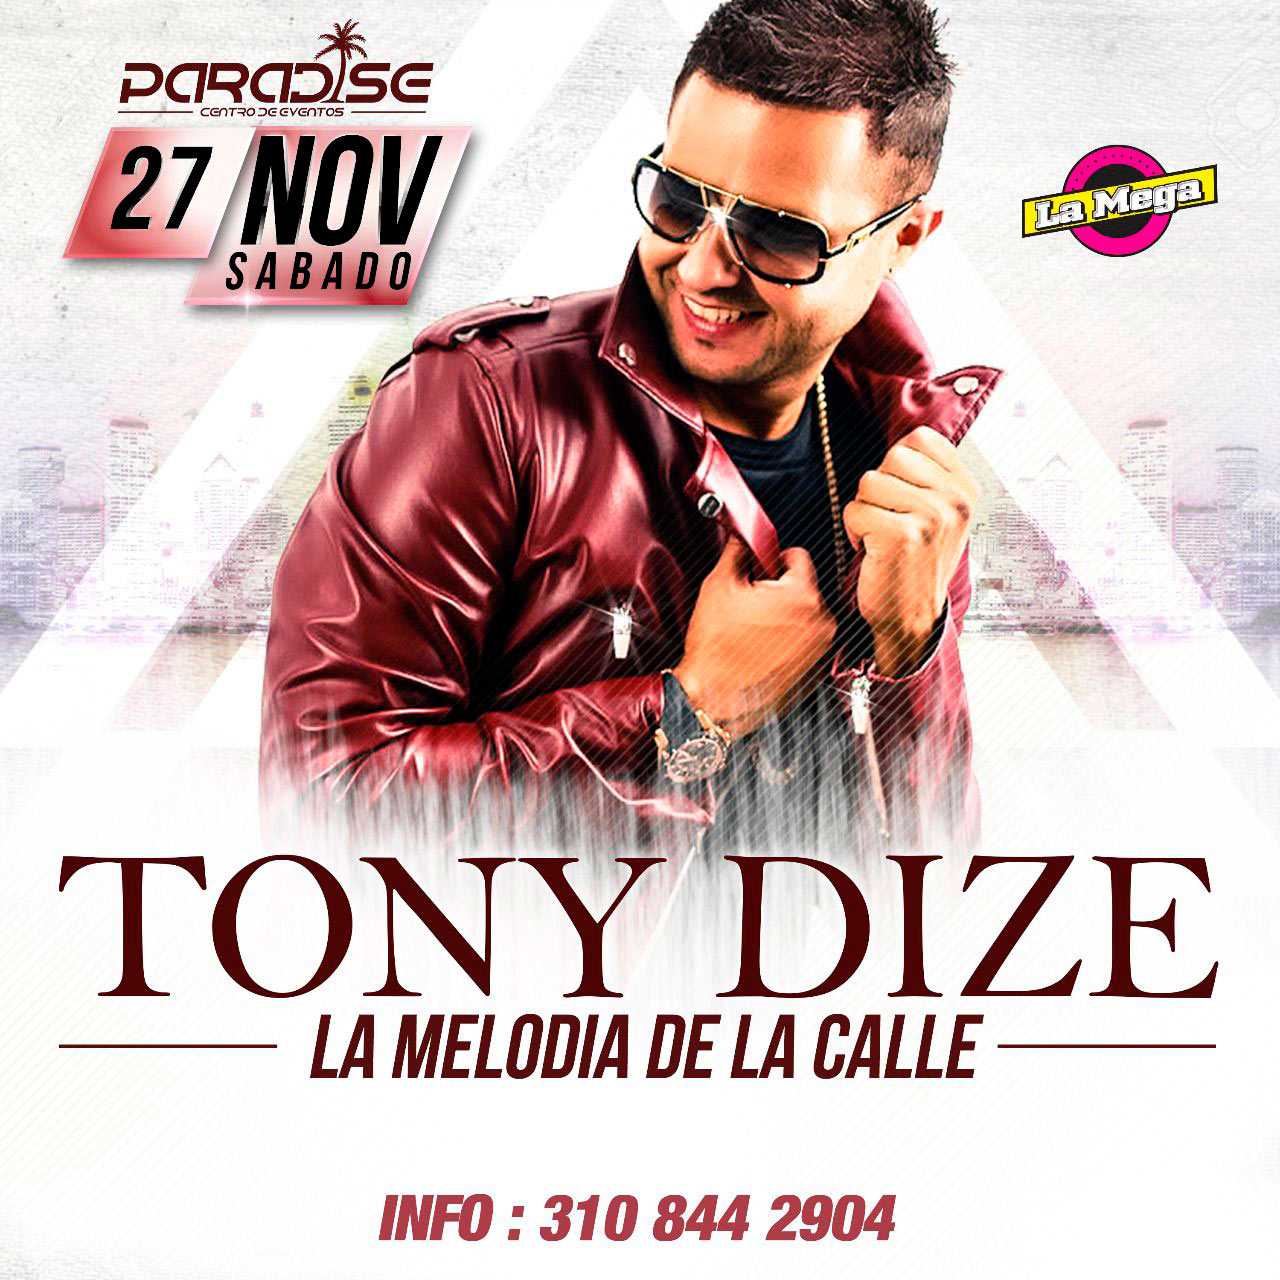 Tony Dize en Concierto – Nov. 27 2021 en Paradise